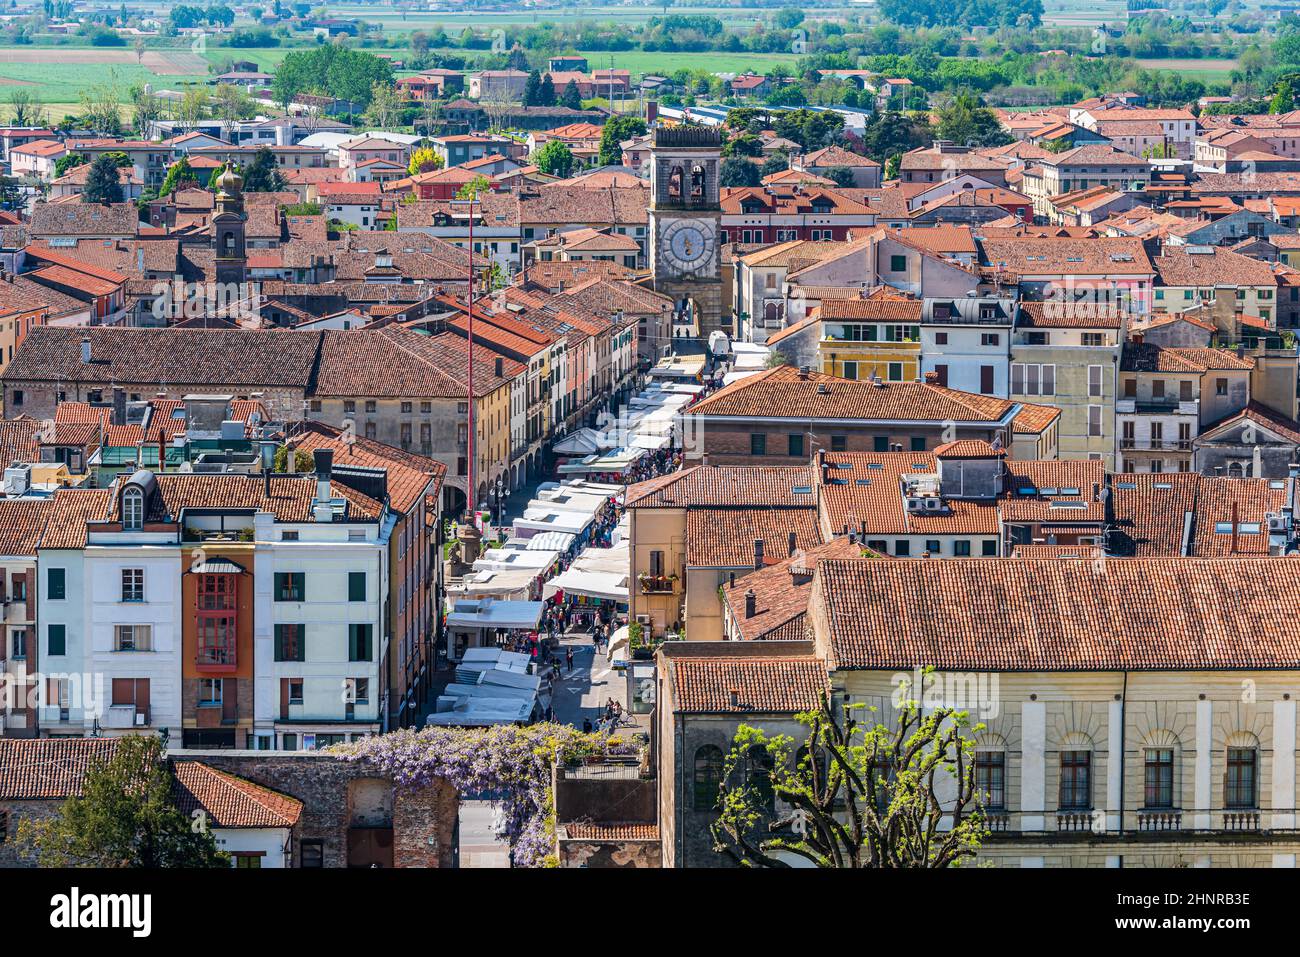 Il centro storico di Este, in Veneto, è stato tratto dalla torre del Castello dei Carraresi Foto Stock